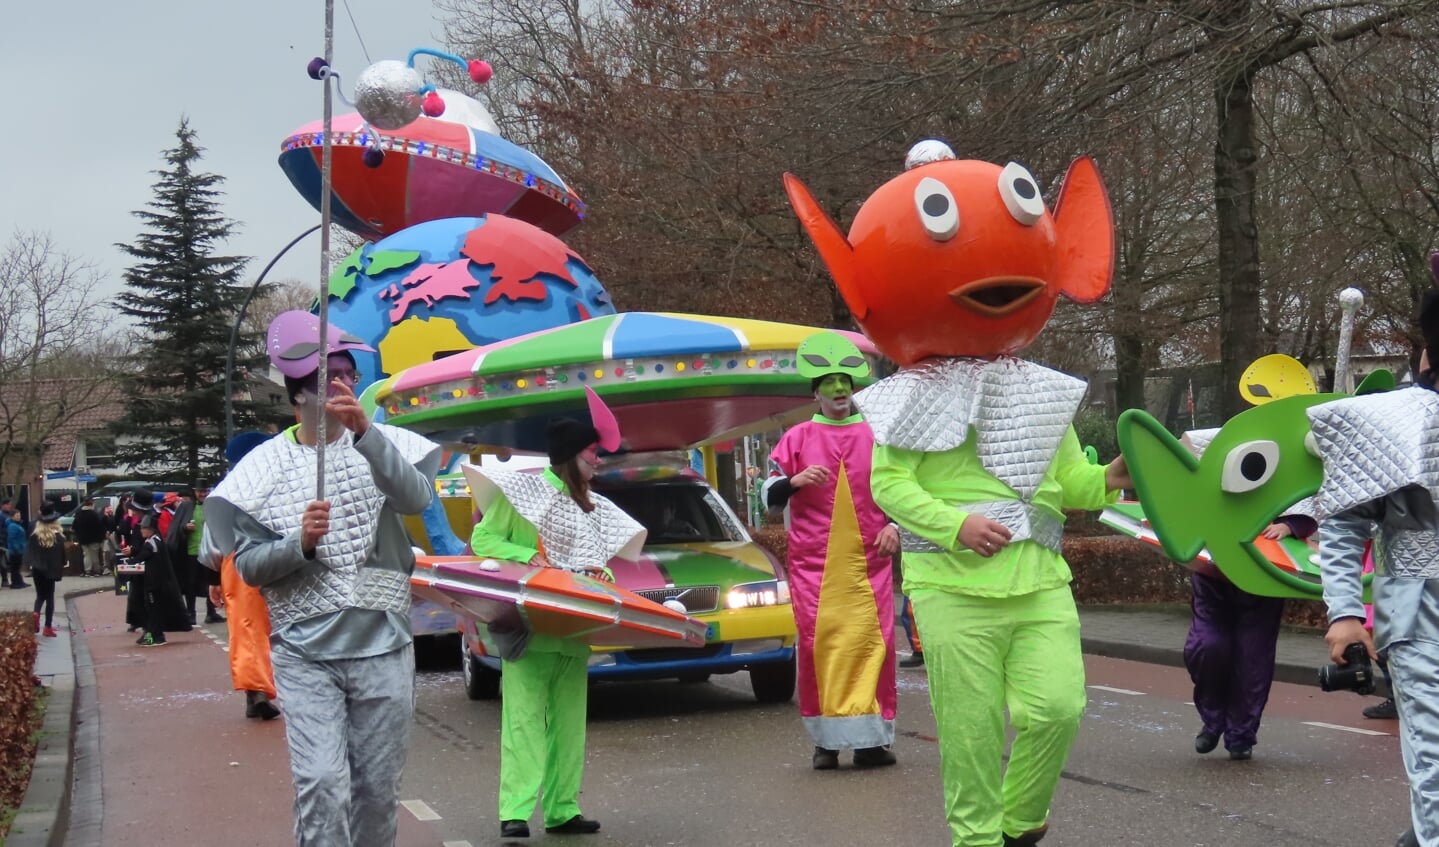 De Toetenburgers vierden carnaval op buitenaardse wijze